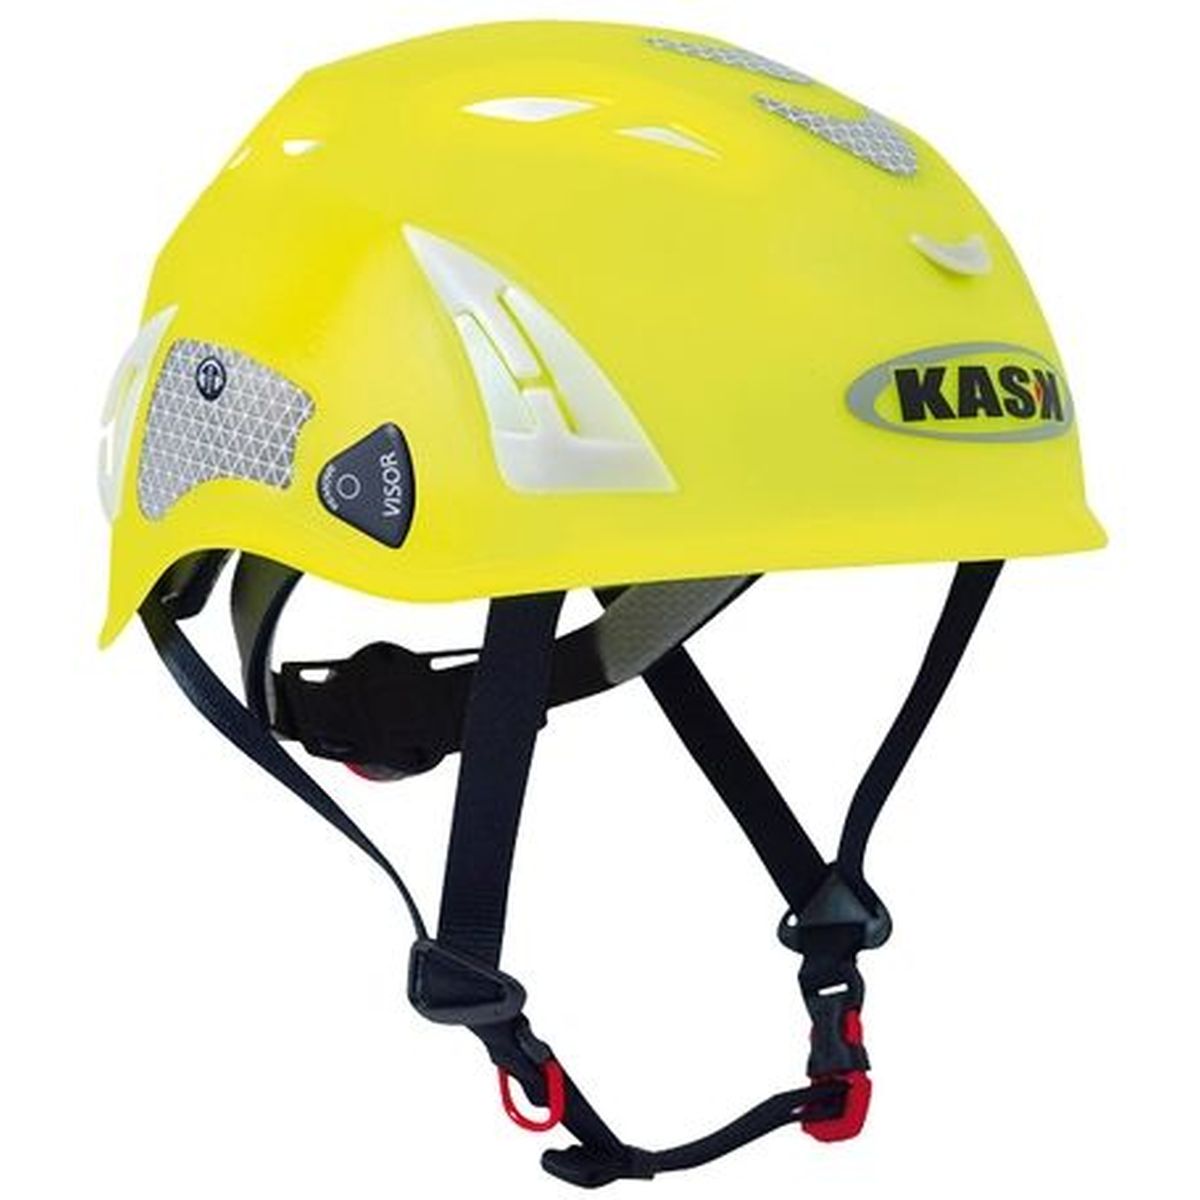 Helmet Plasma HI VIZ yellow fluo KASK